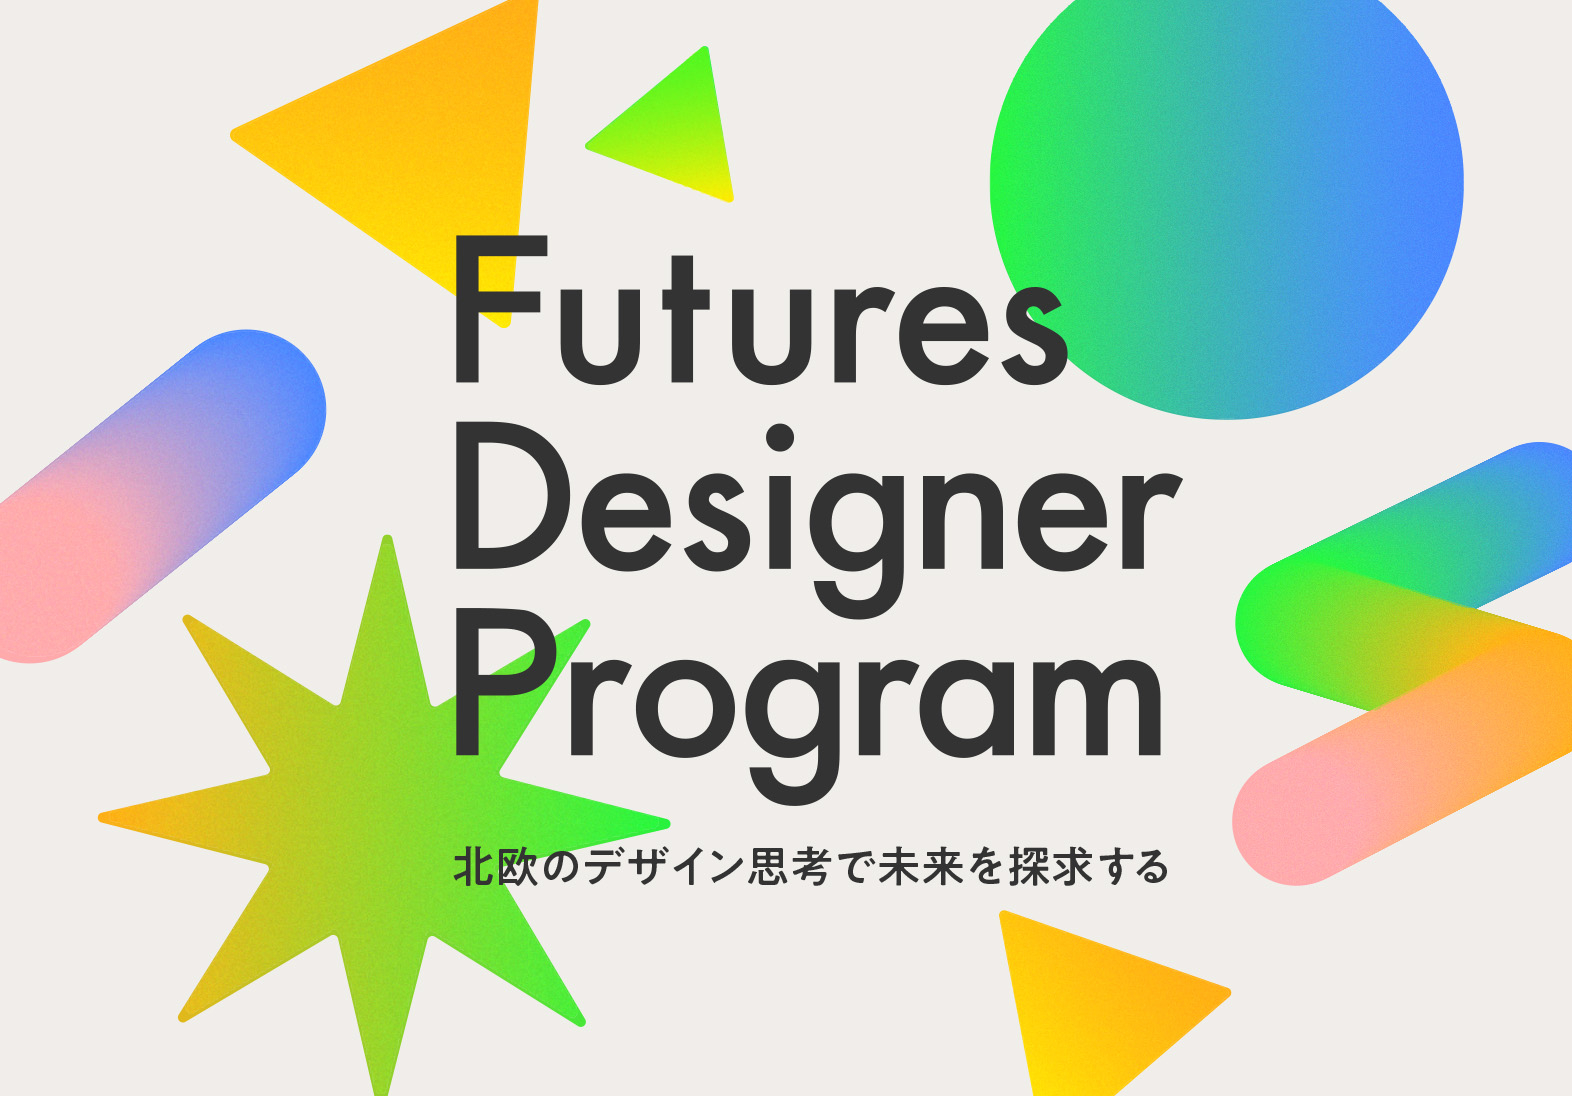 Futures Designer Program